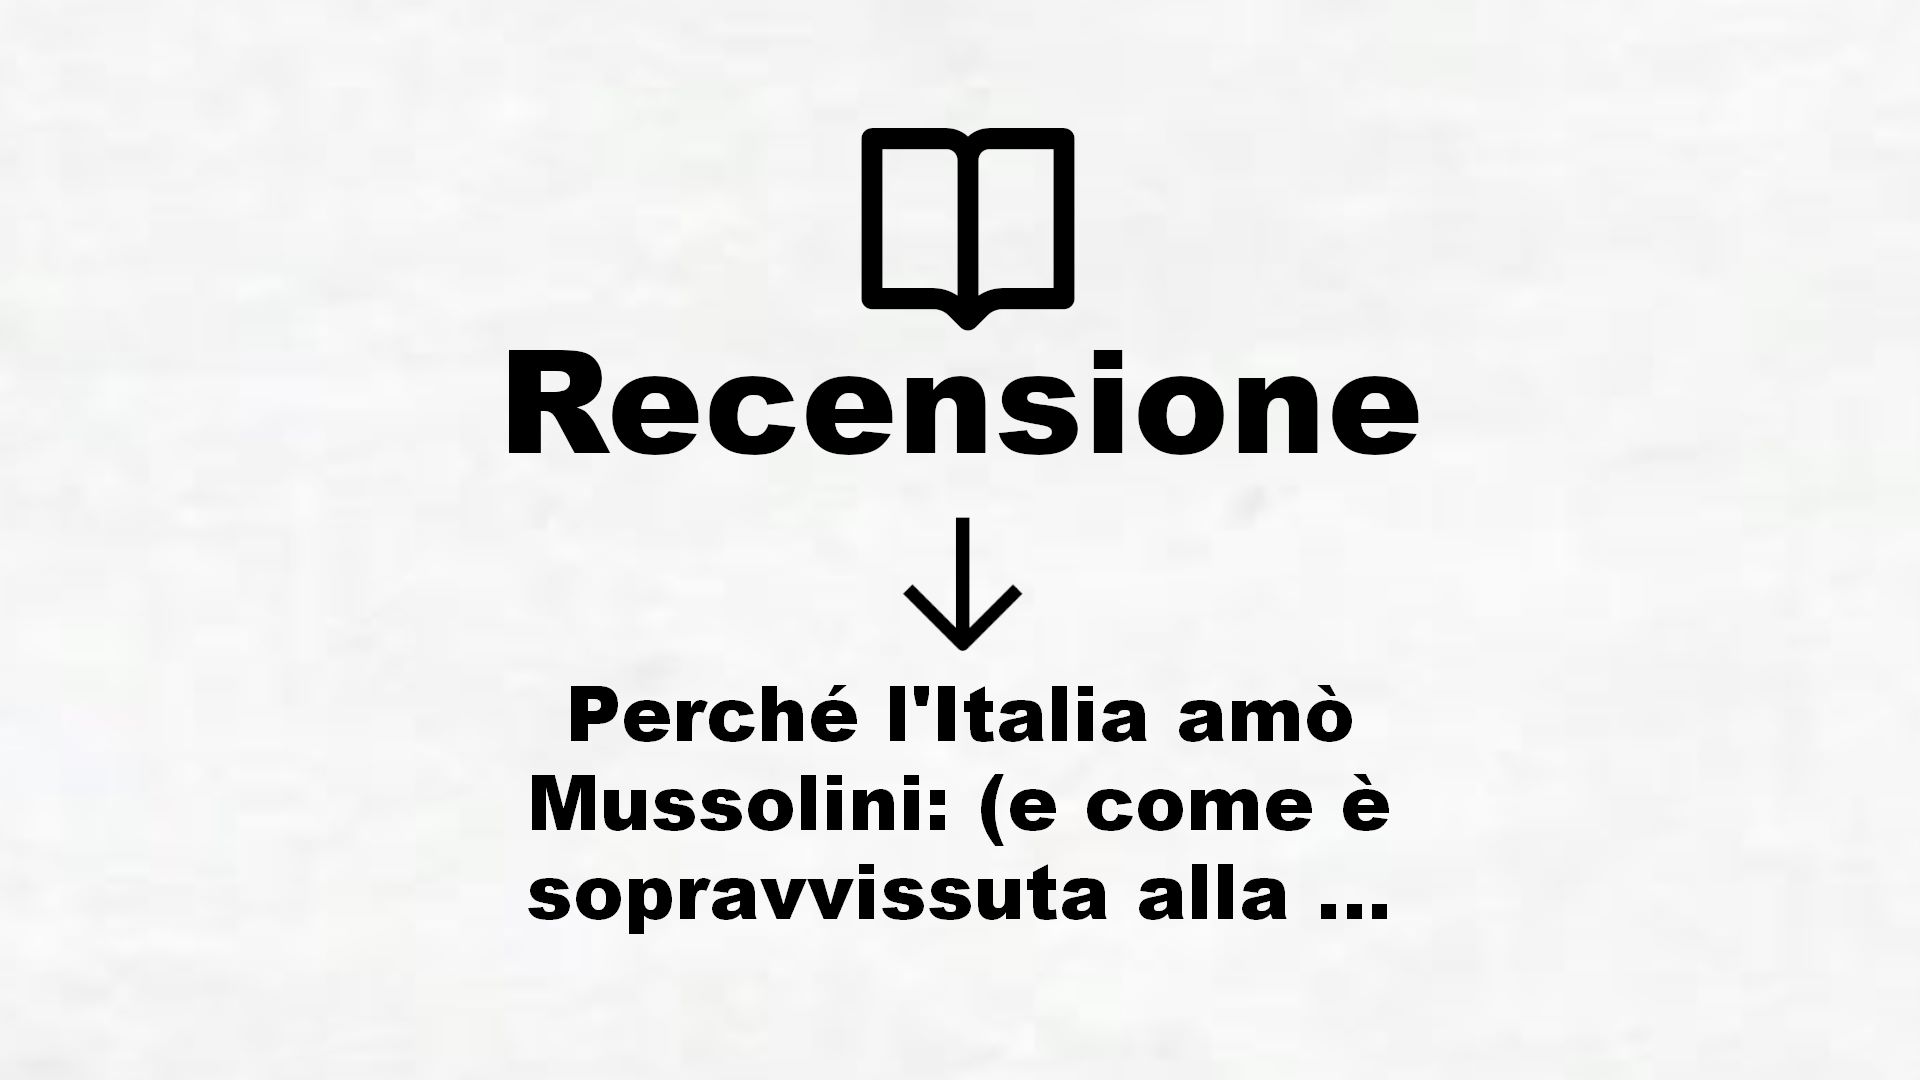 Perché l’Italia amò Mussolini: (e come è sopravvissuta alla dittatura del virus) – Recensione Libro